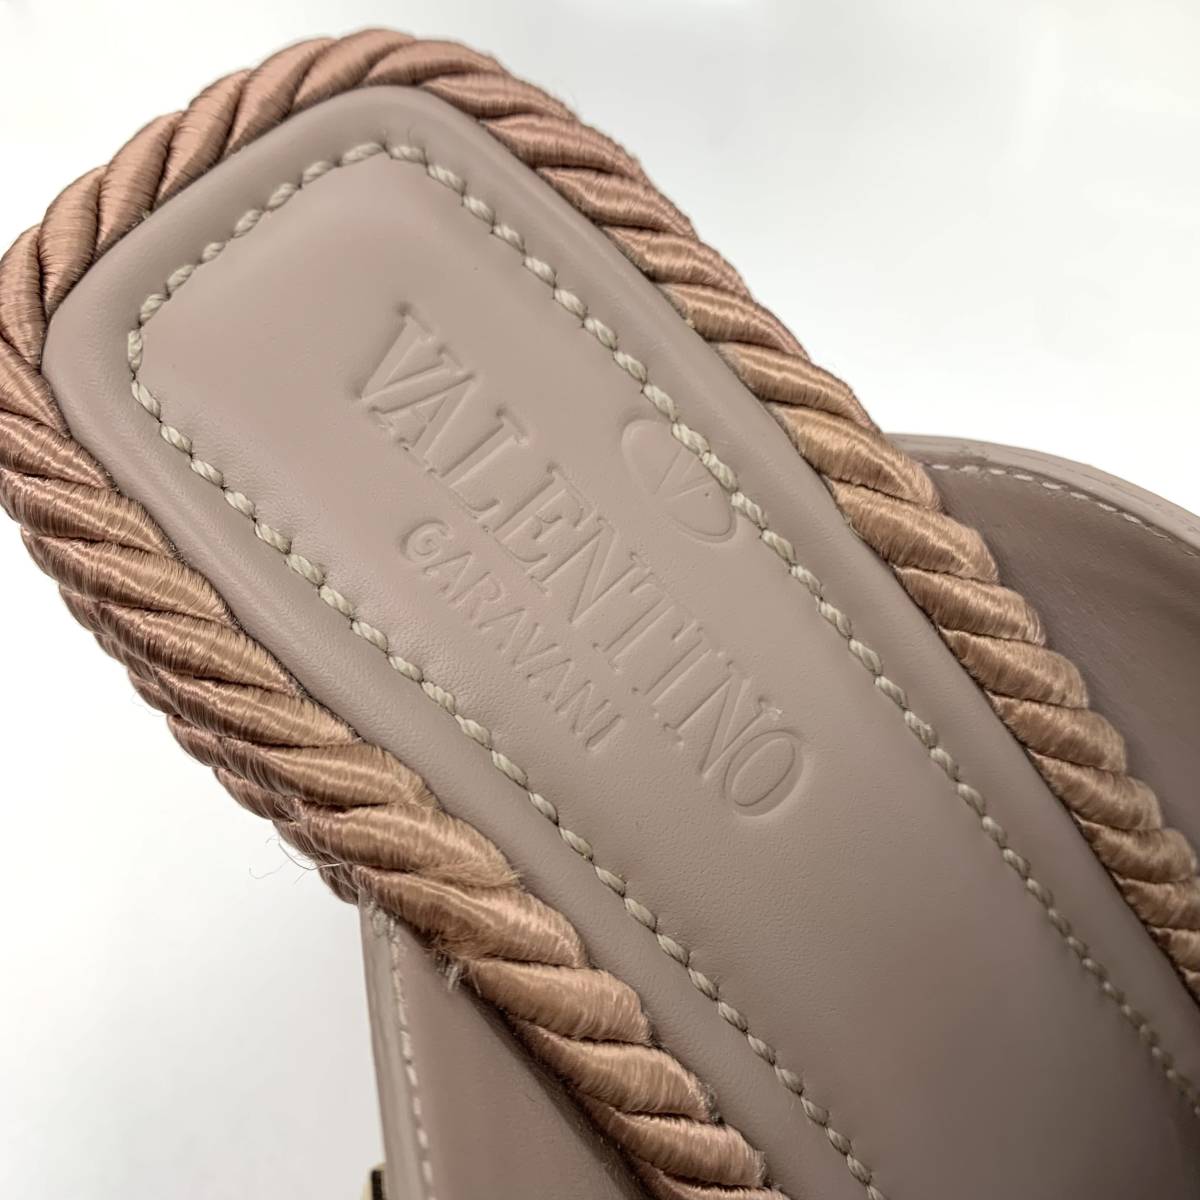 6307 Valentino lock studs leather Wedge sandals pink beige 